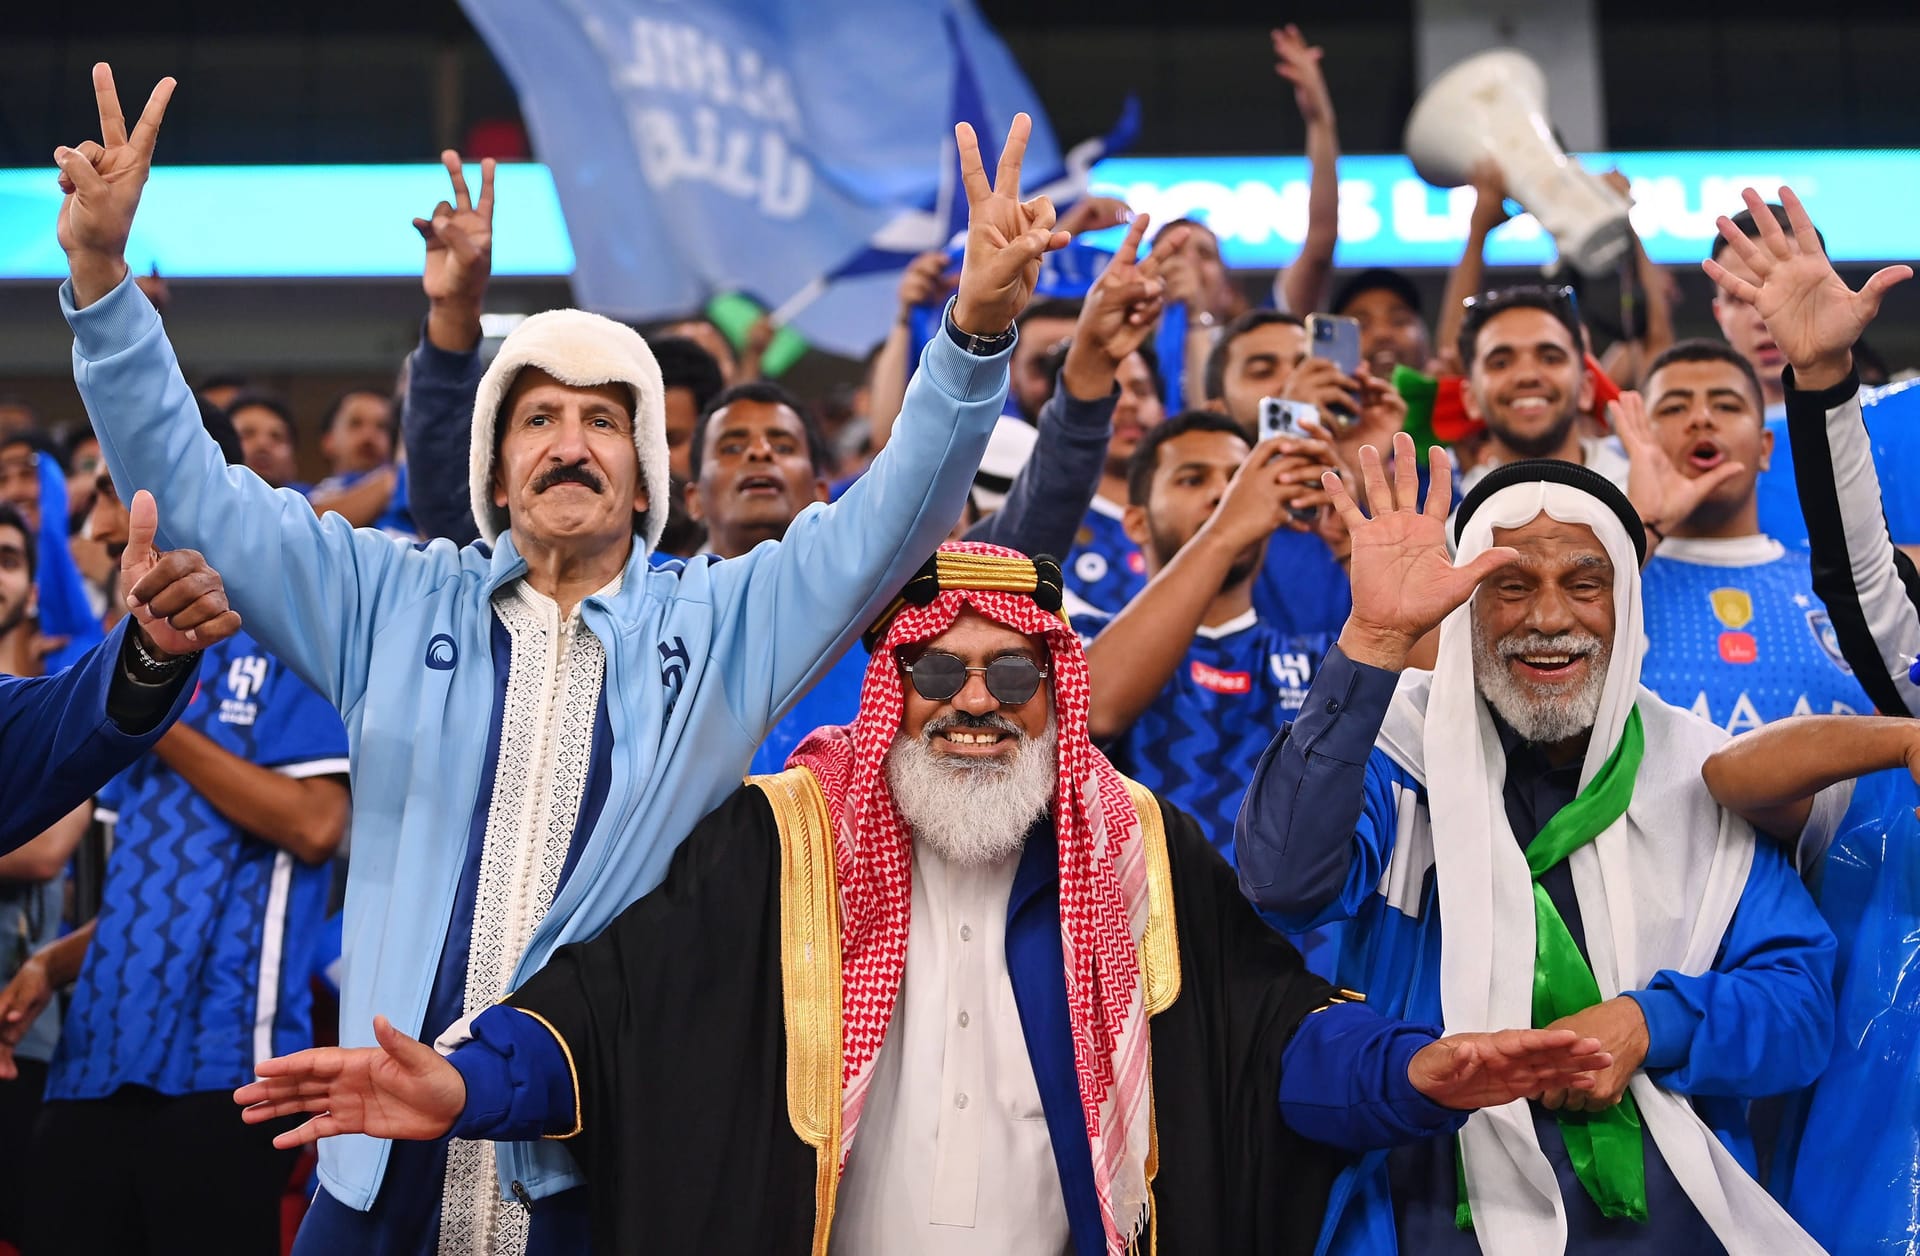 Fußballfans in Saudi-Arabien: Das Königreich hat eine Großoffensive im Sport gestartet.